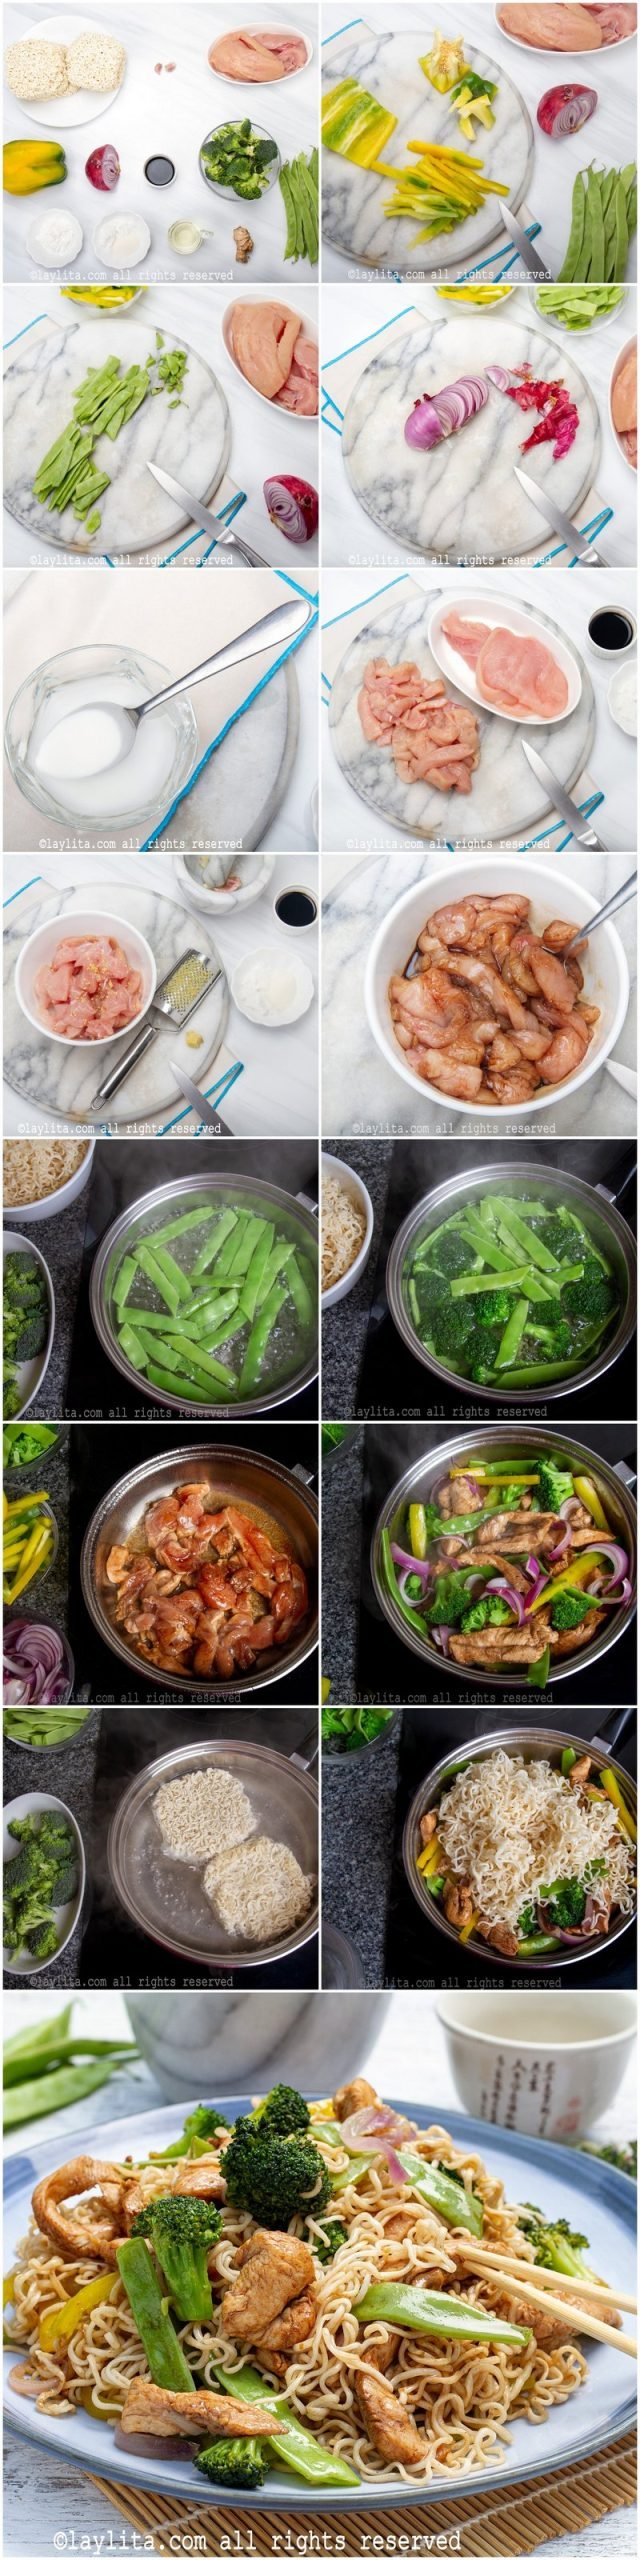 Preparación paso a paso del lo mein con pollo y vegetales